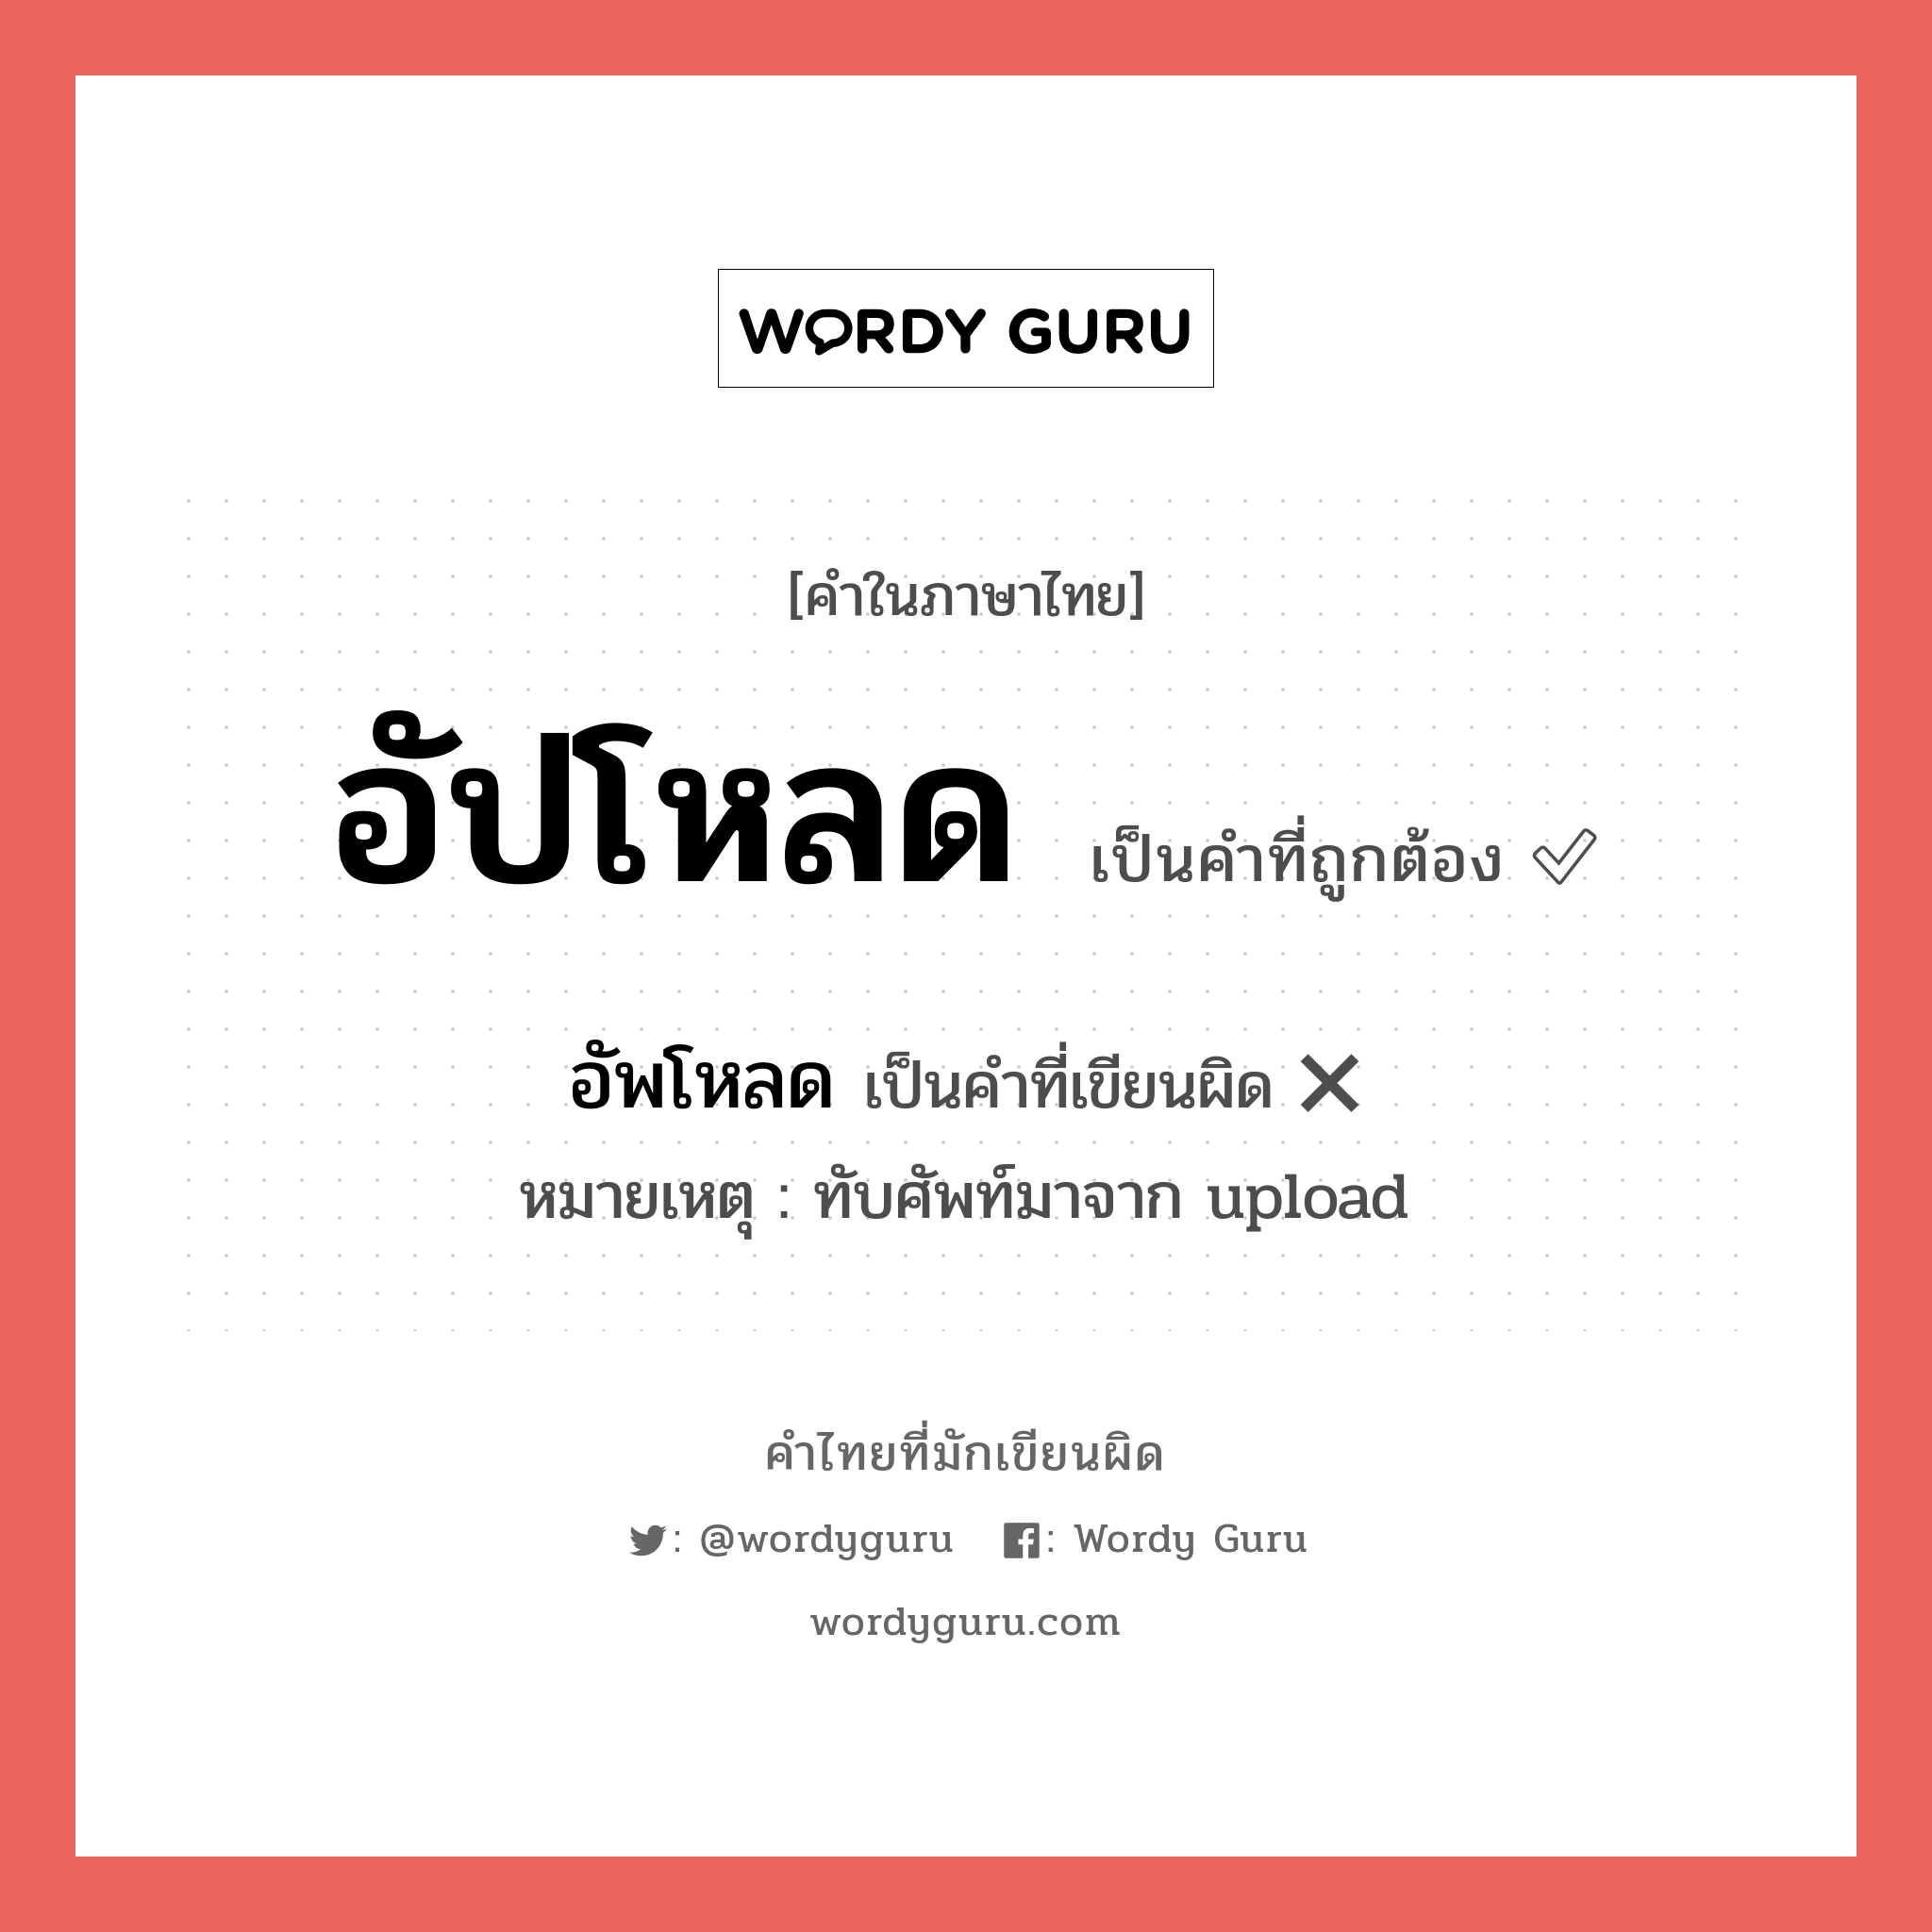 อัปโหลด หรือ อัพโหลด เขียนยังไง? คำไหนเขียนถูก?, คำในภาษาไทยที่มักเขียนผิด อัปโหลด คำที่ผิด ❌ อัพโหลด หมายเหตุ ทับศัพท์มาจาก upload